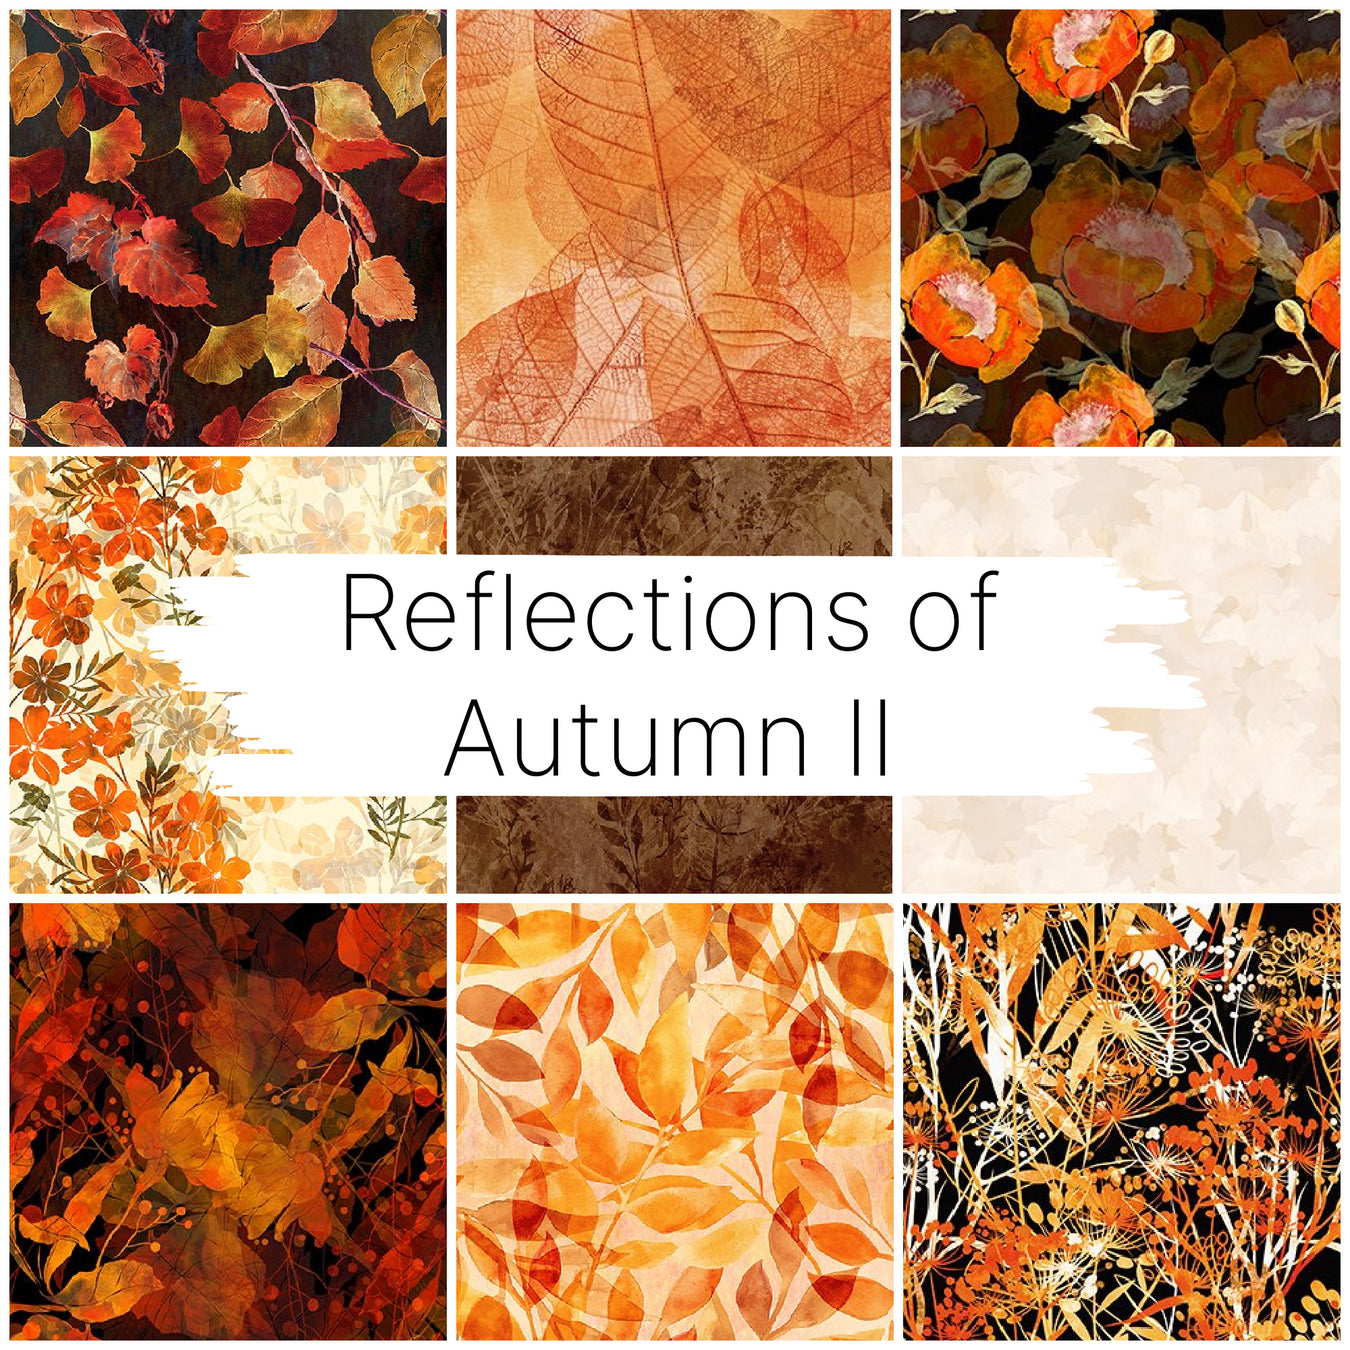 Reflections of Autumn II